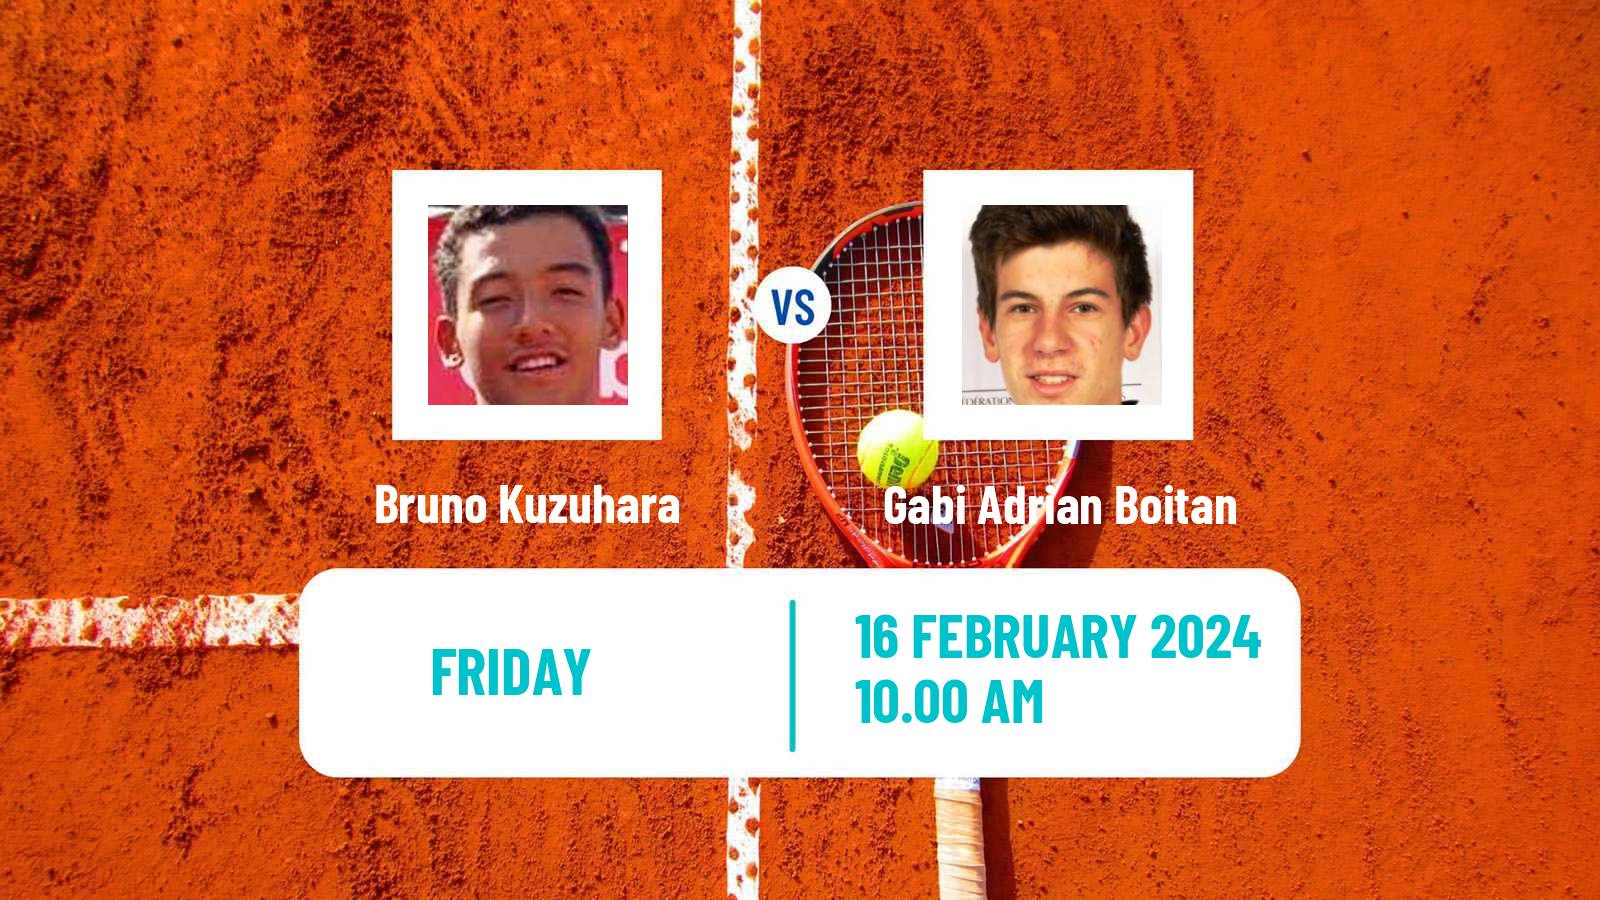 Tennis ITF M15 Palm Coast Fl Men Bruno Kuzuhara - Gabi Adrian Boitan